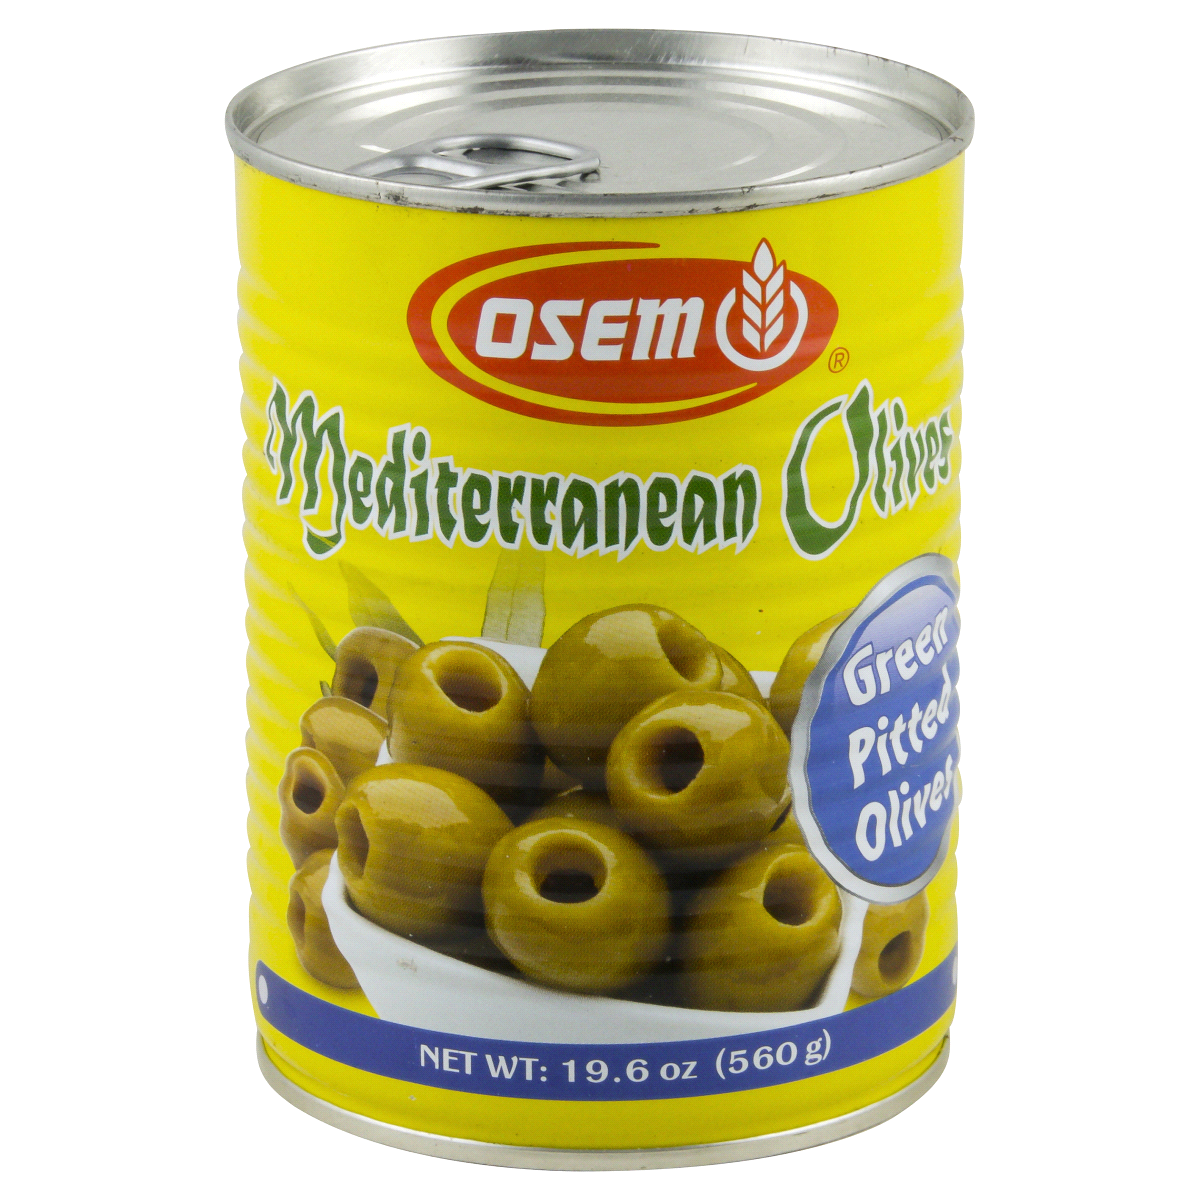 slide 1 of 4, Osem Mediterranean Green Pitted Olives, 18 oz